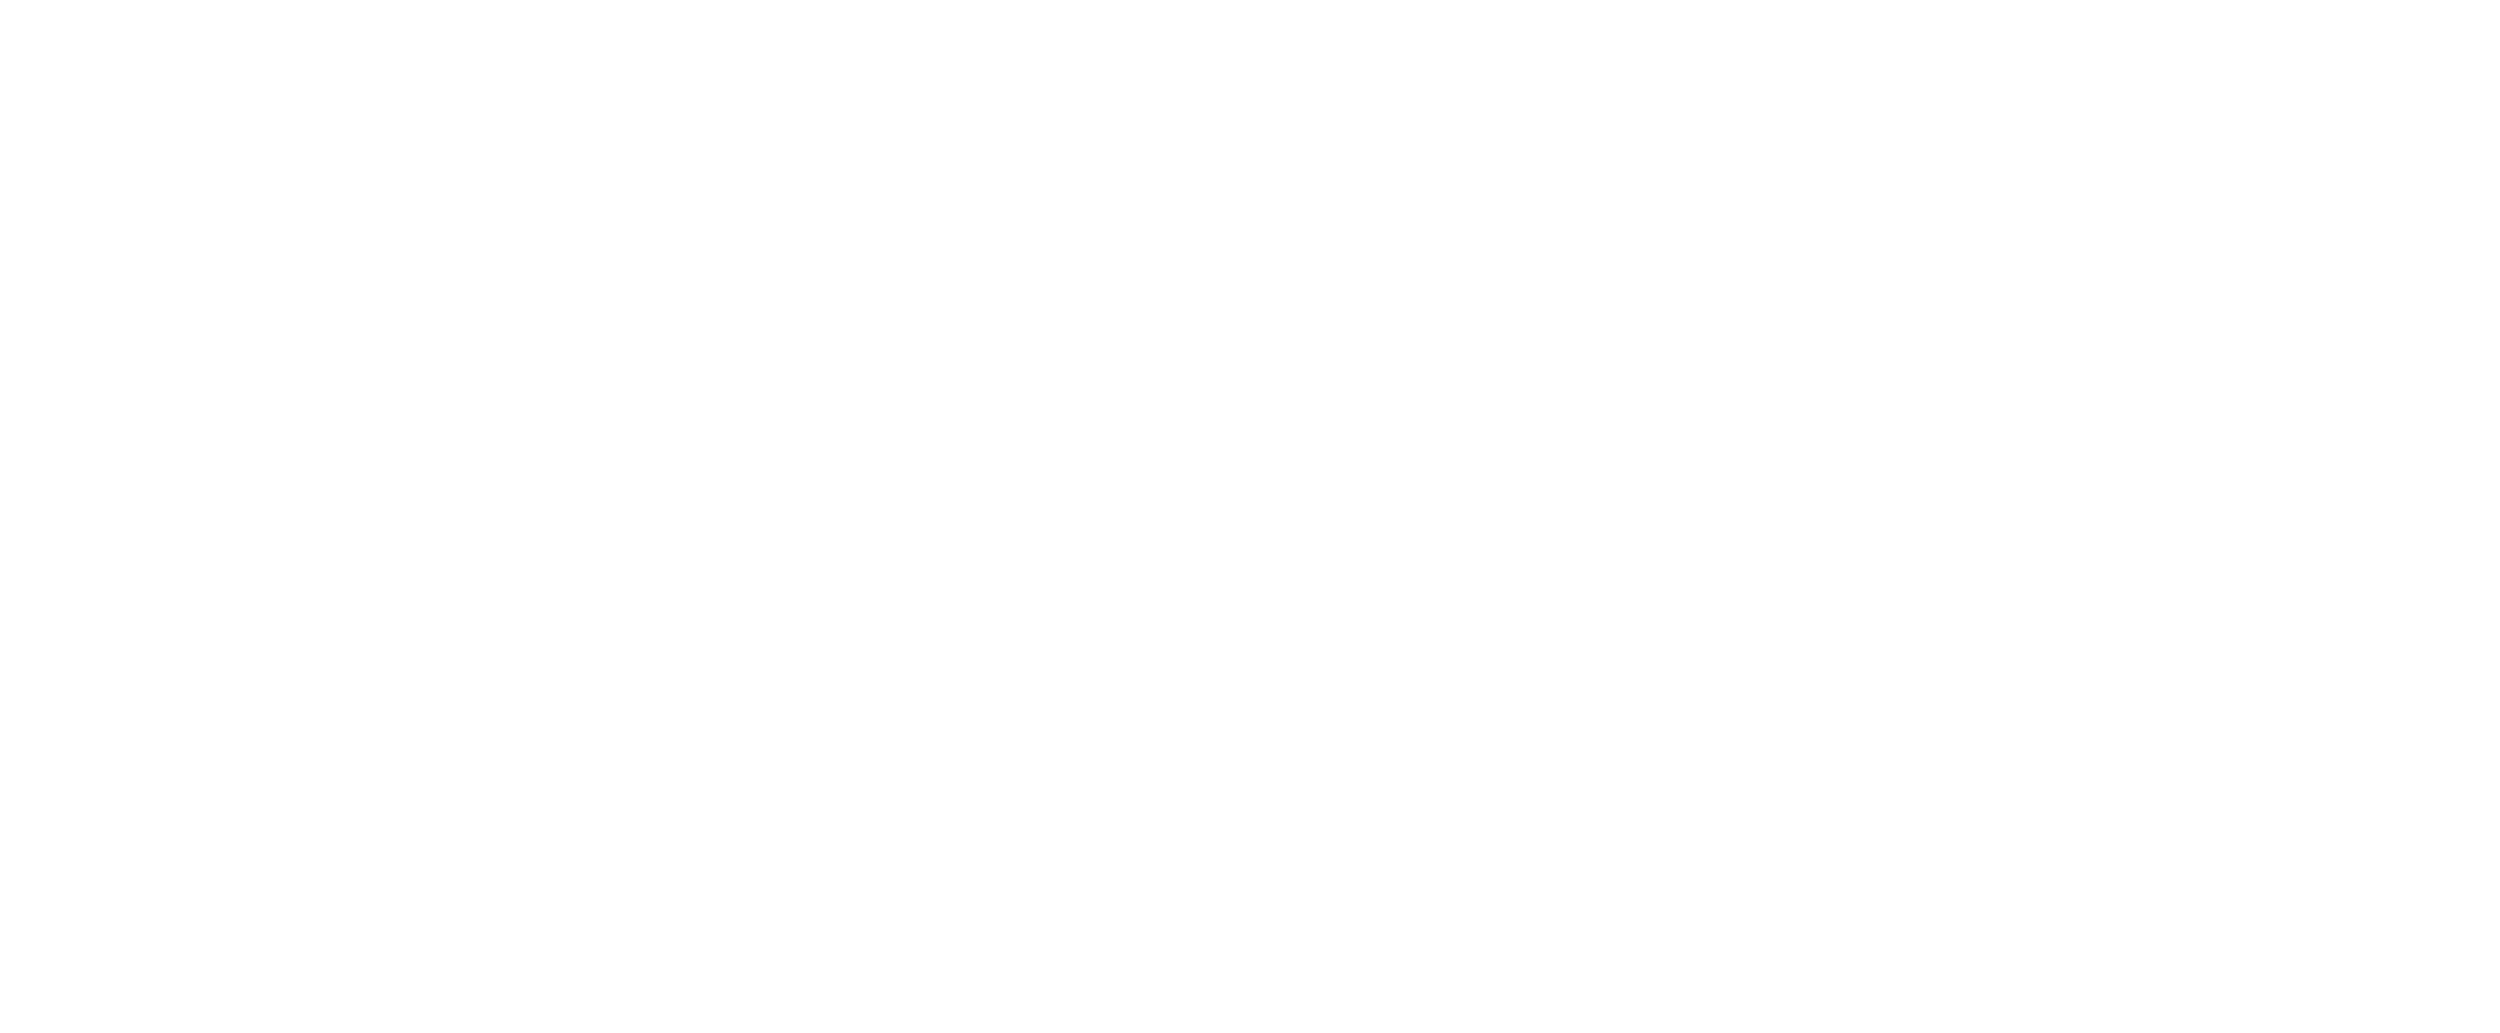 Touchstone Brands 